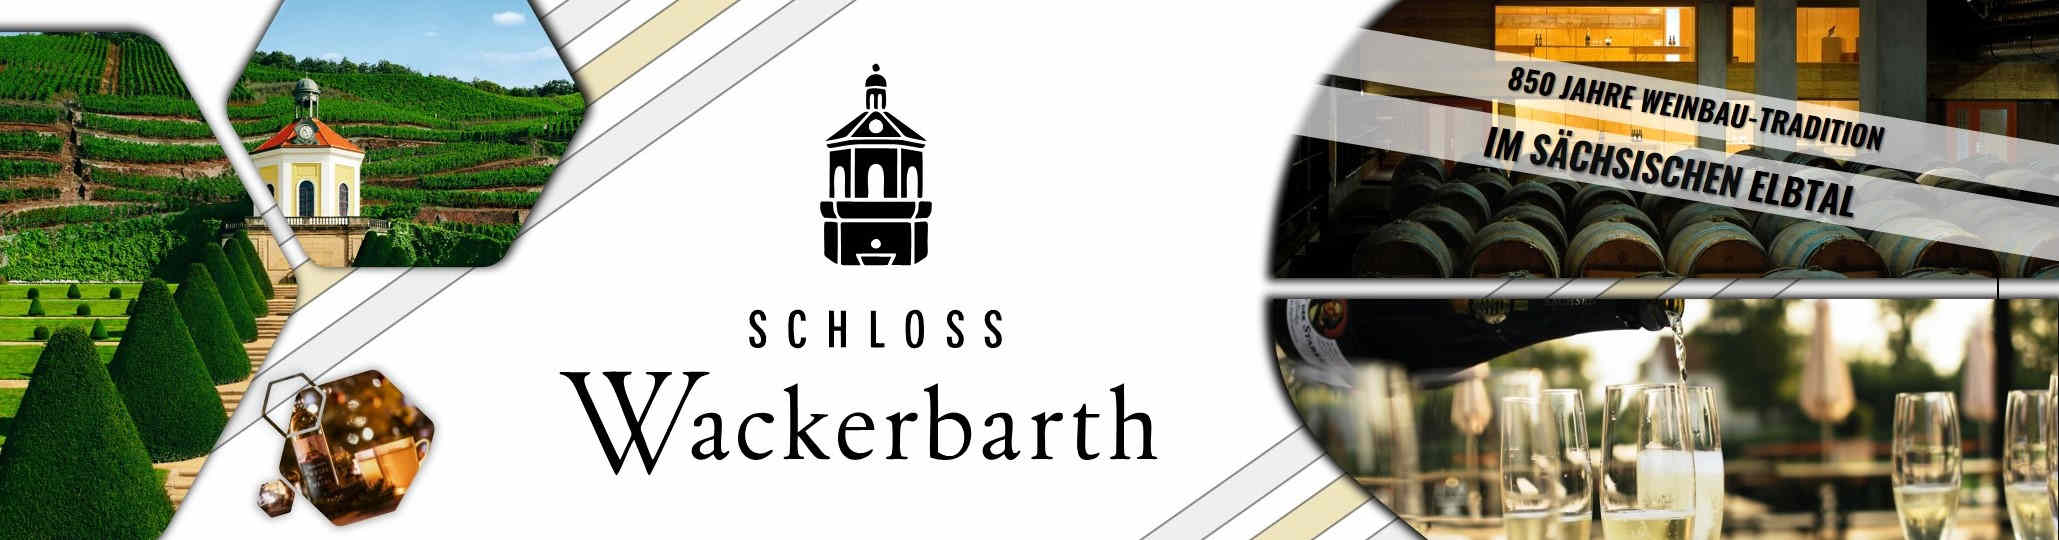 Schloss Wackerbarth Sortiment - Wein und erlesener Sekt aus Sachsen